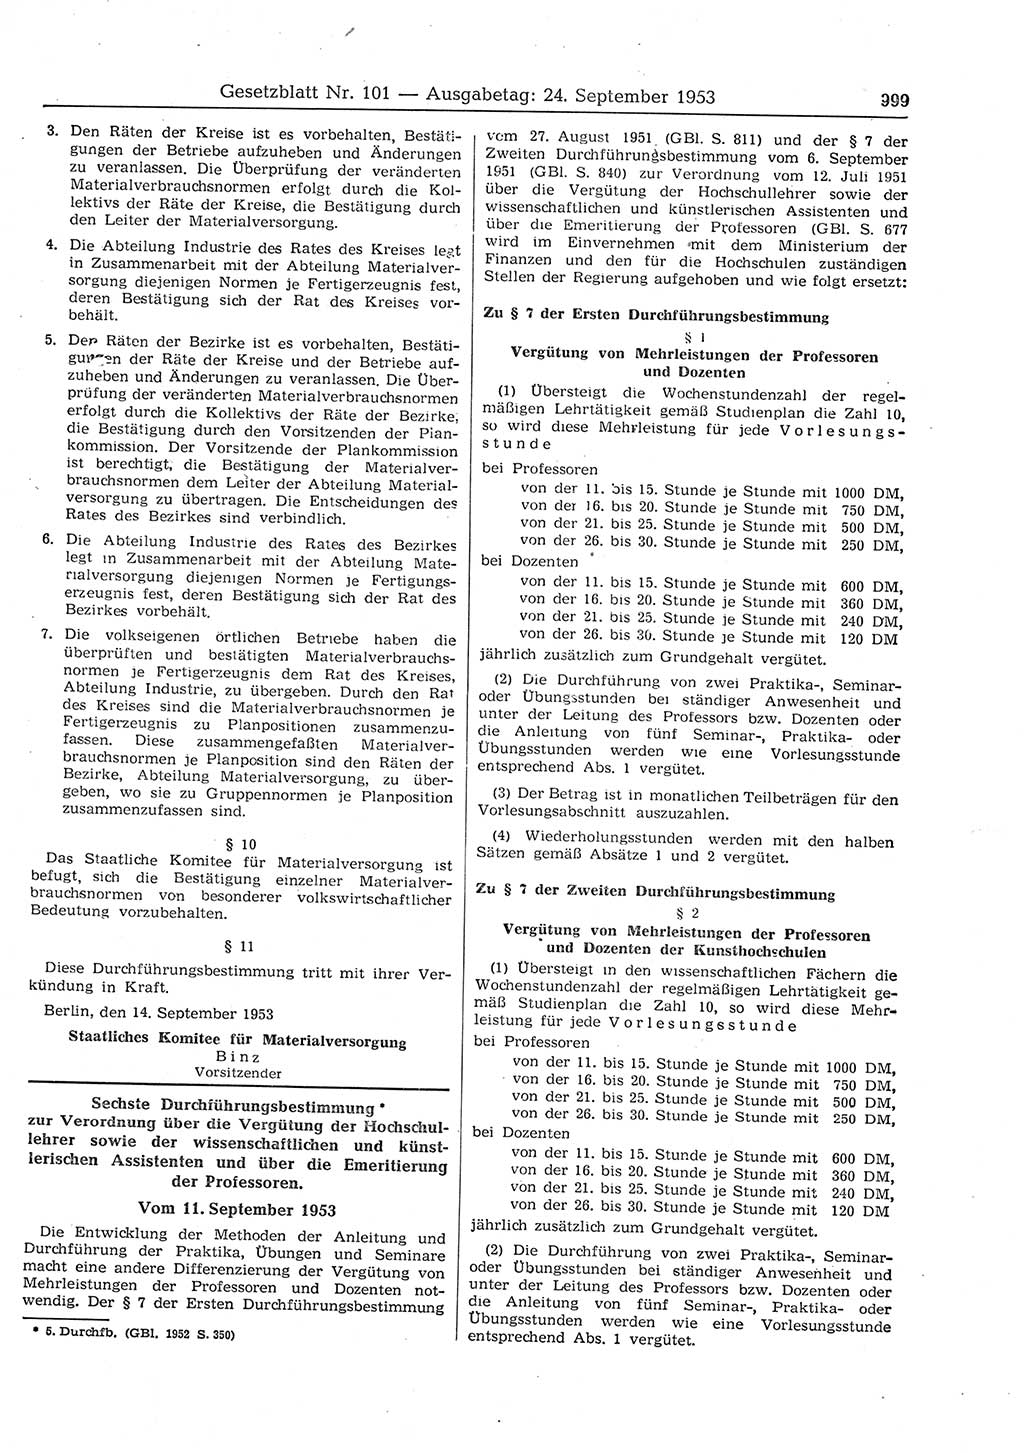 Gesetzblatt (GBl.) der Deutschen Demokratischen Republik (DDR) 1953, Seite 999 (GBl. DDR 1953, S. 999)